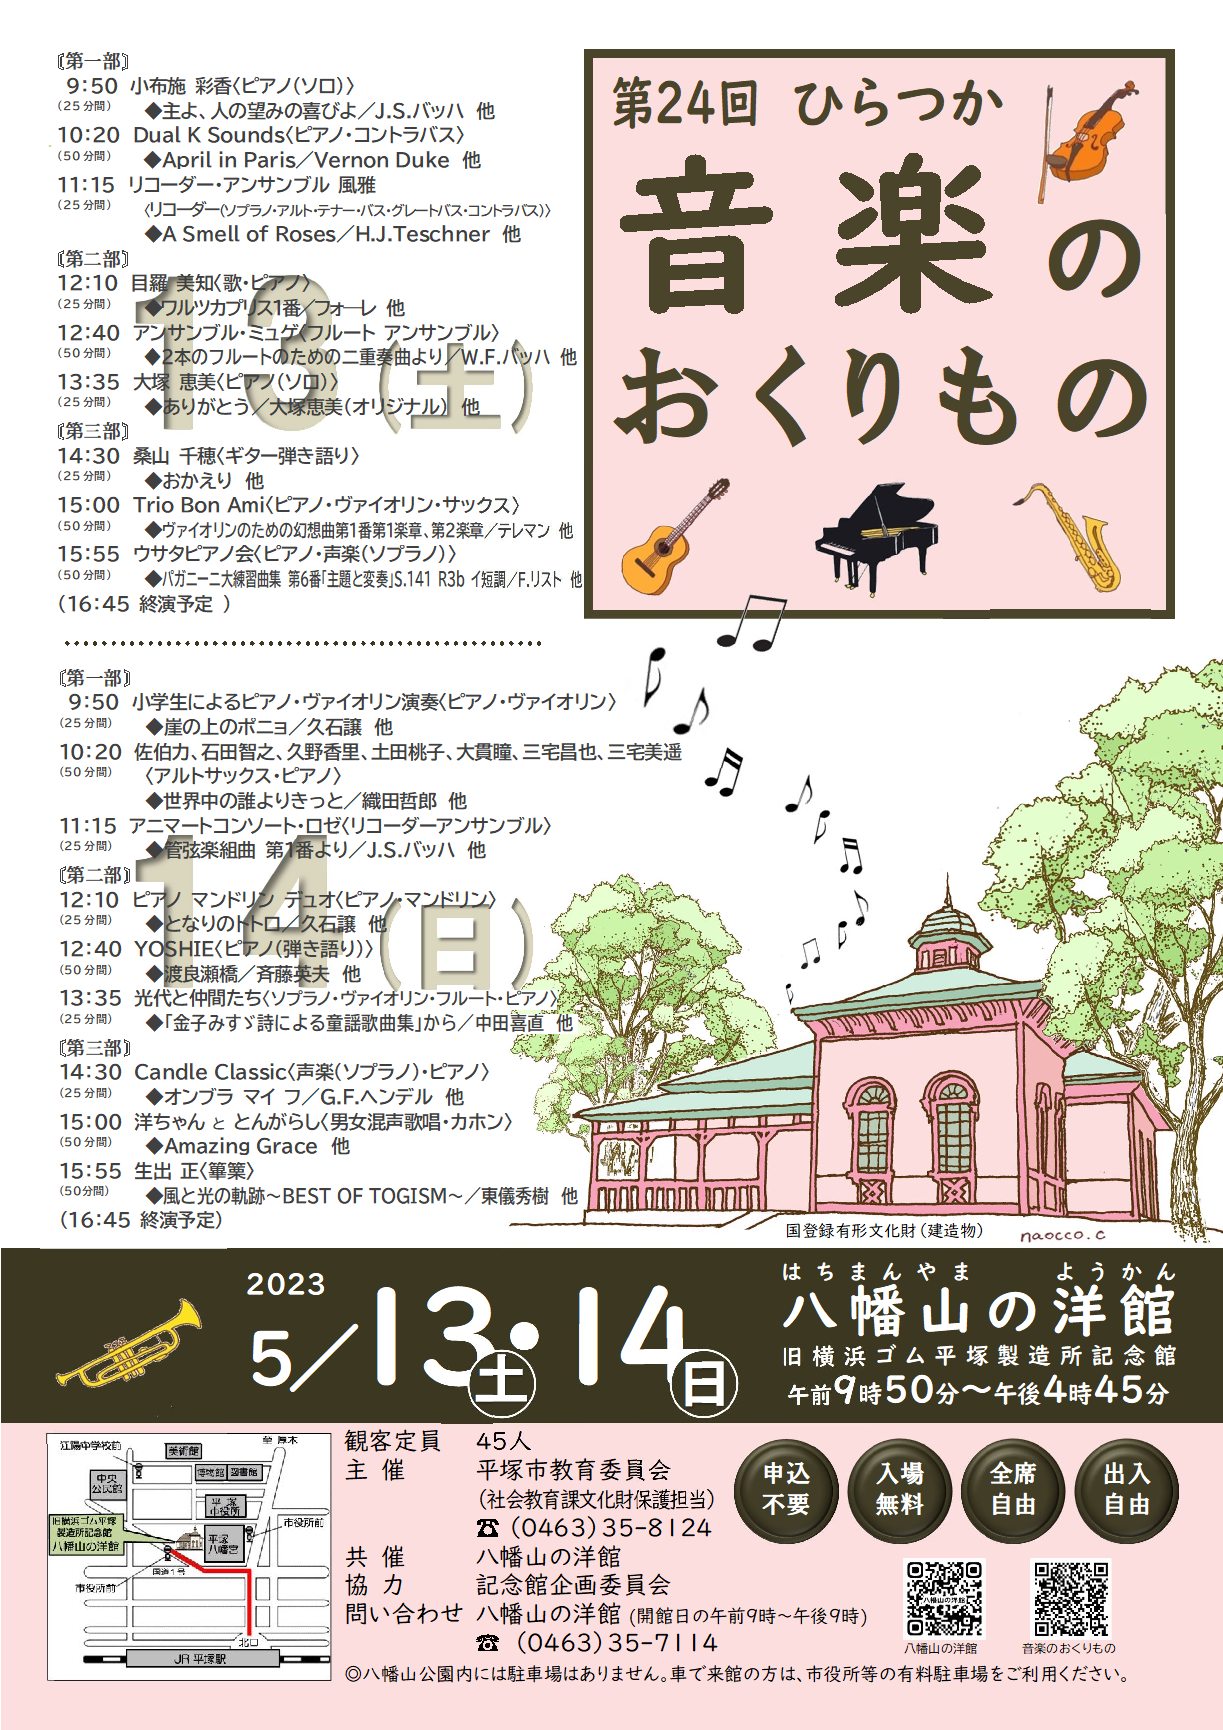 八幡山の洋館「第24回ひらつか音楽のおくりもの」が5月13日土曜日、14日日曜日に開催されます。両日で18組が出演します。